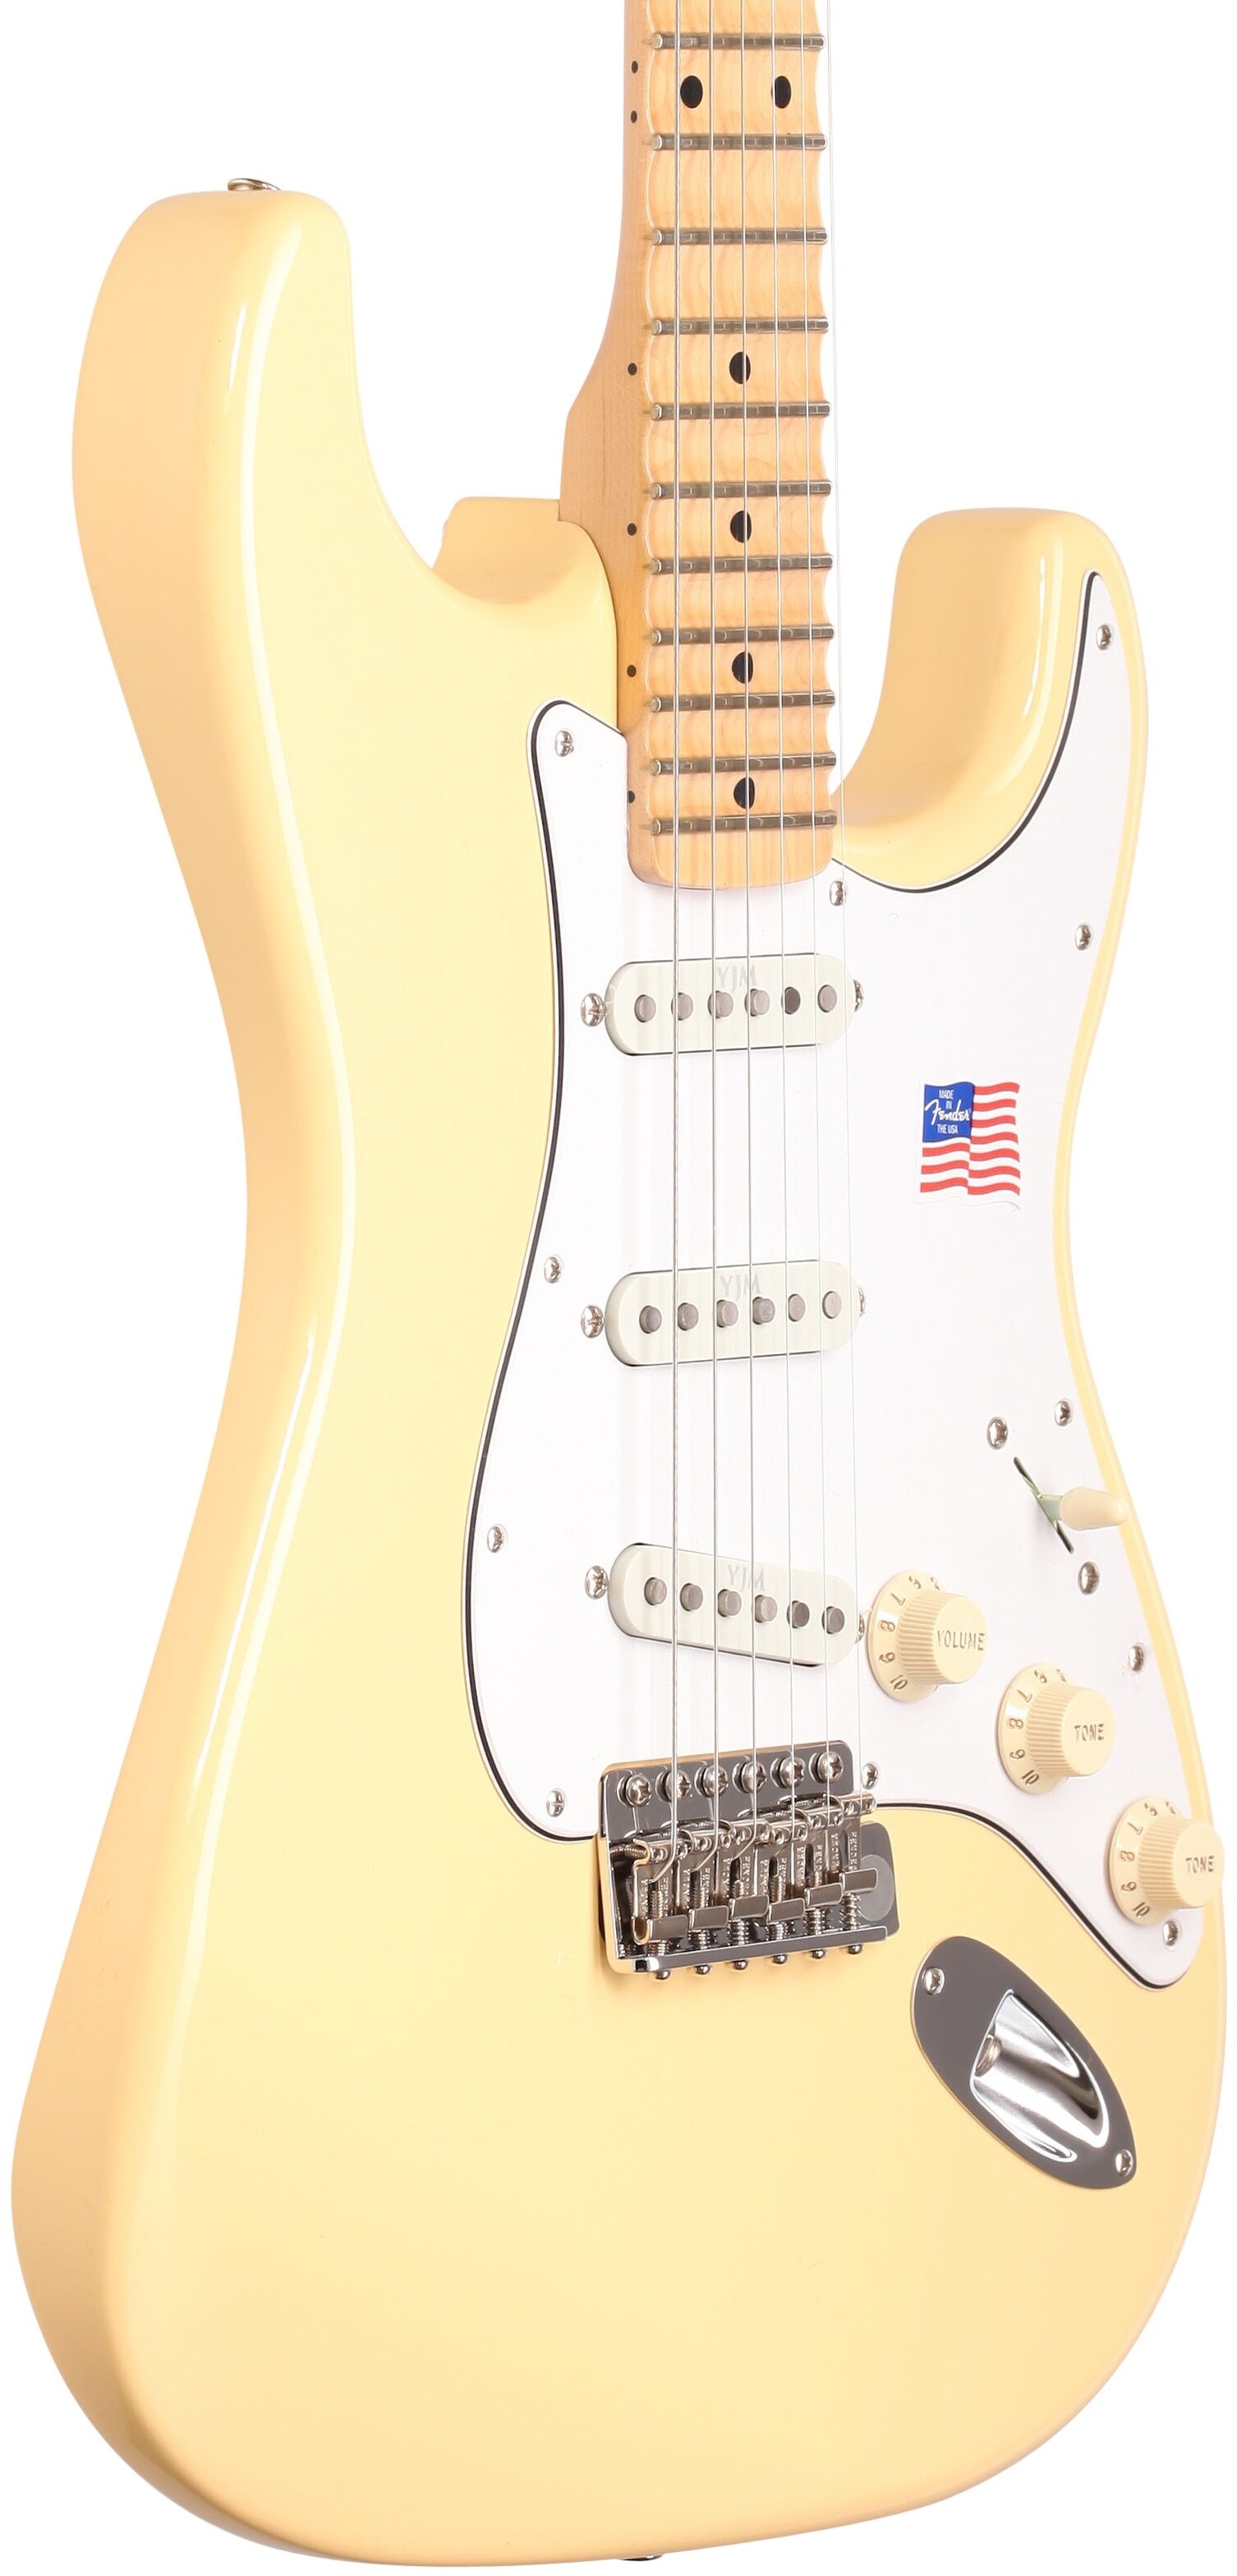 Yngwie Malmsteen UK Seller Guitar Miniature Fender Stratocaster 